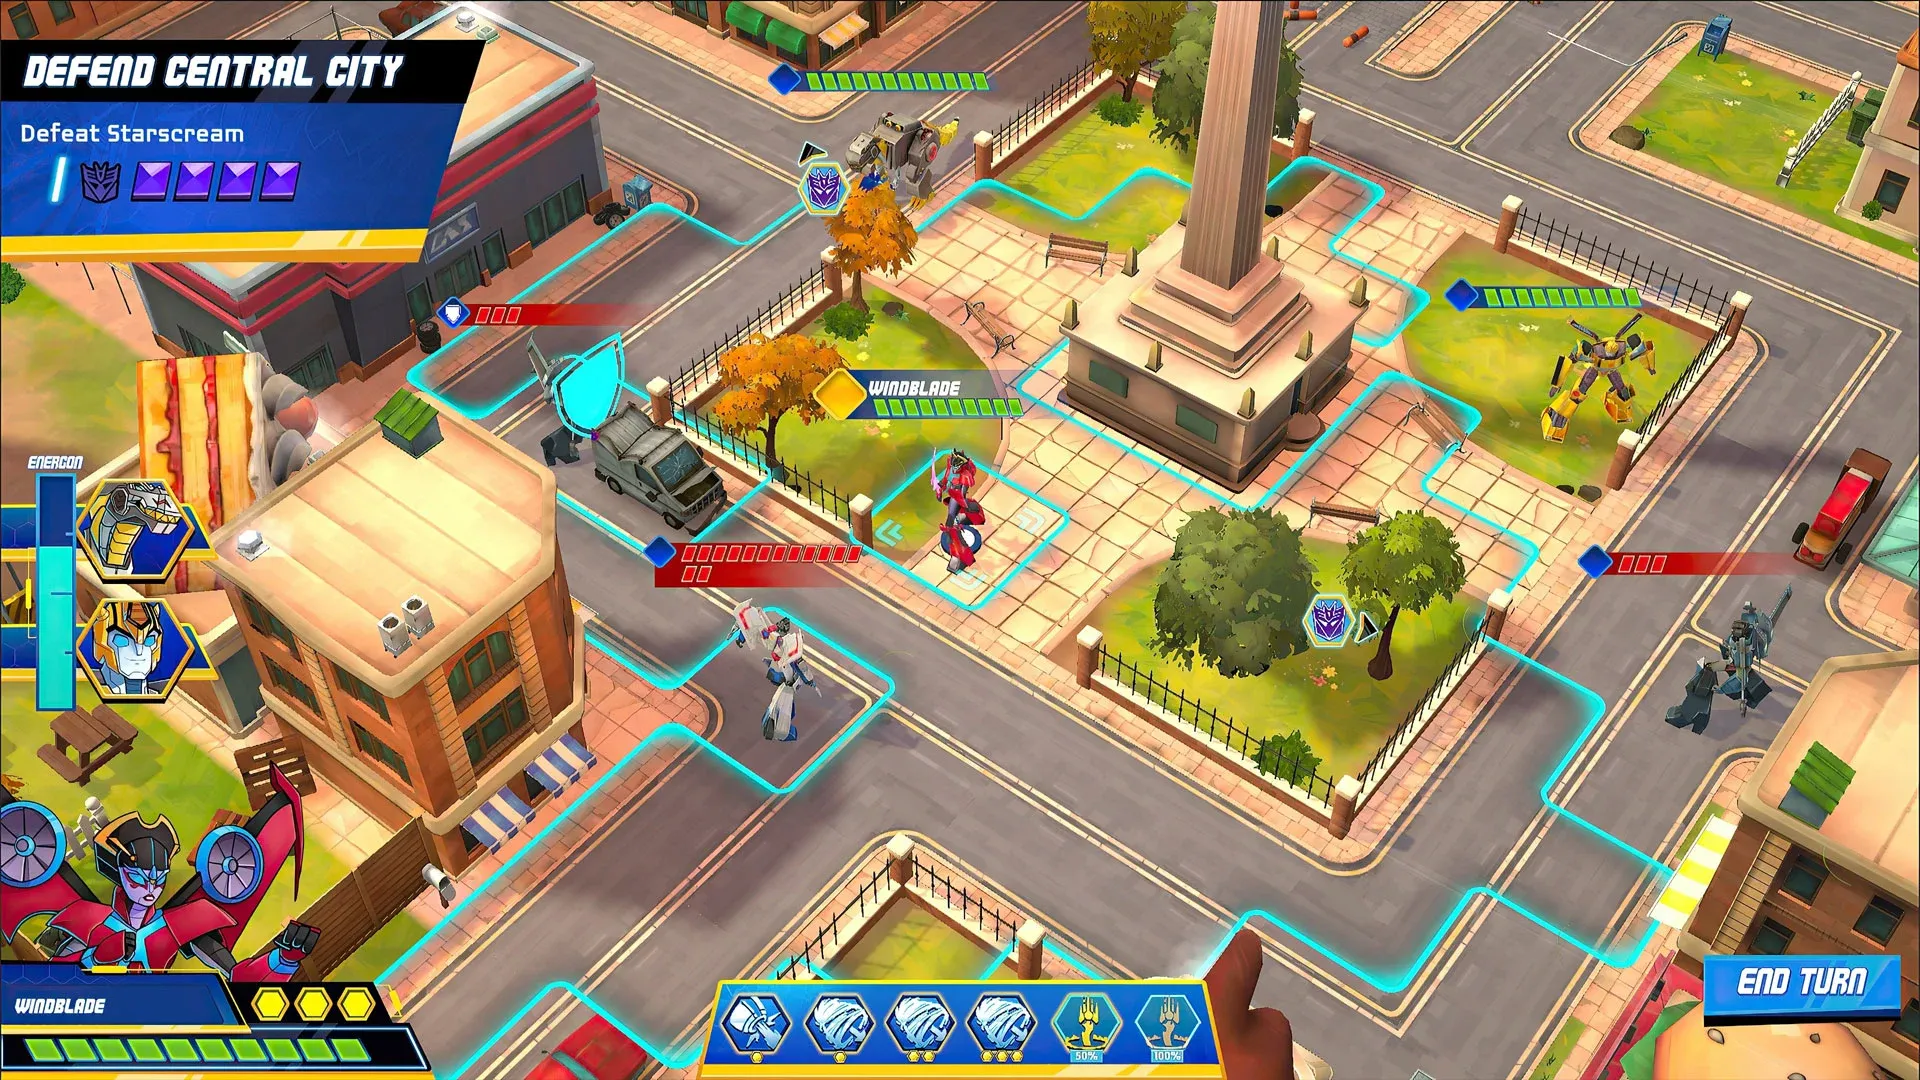 Imagem do jogo Transformers Battlegrounds que mostra uma cidade em uma visão área inclinada com algumas unidades Autobots e Decepticons espalhadas pelo campo de batalha